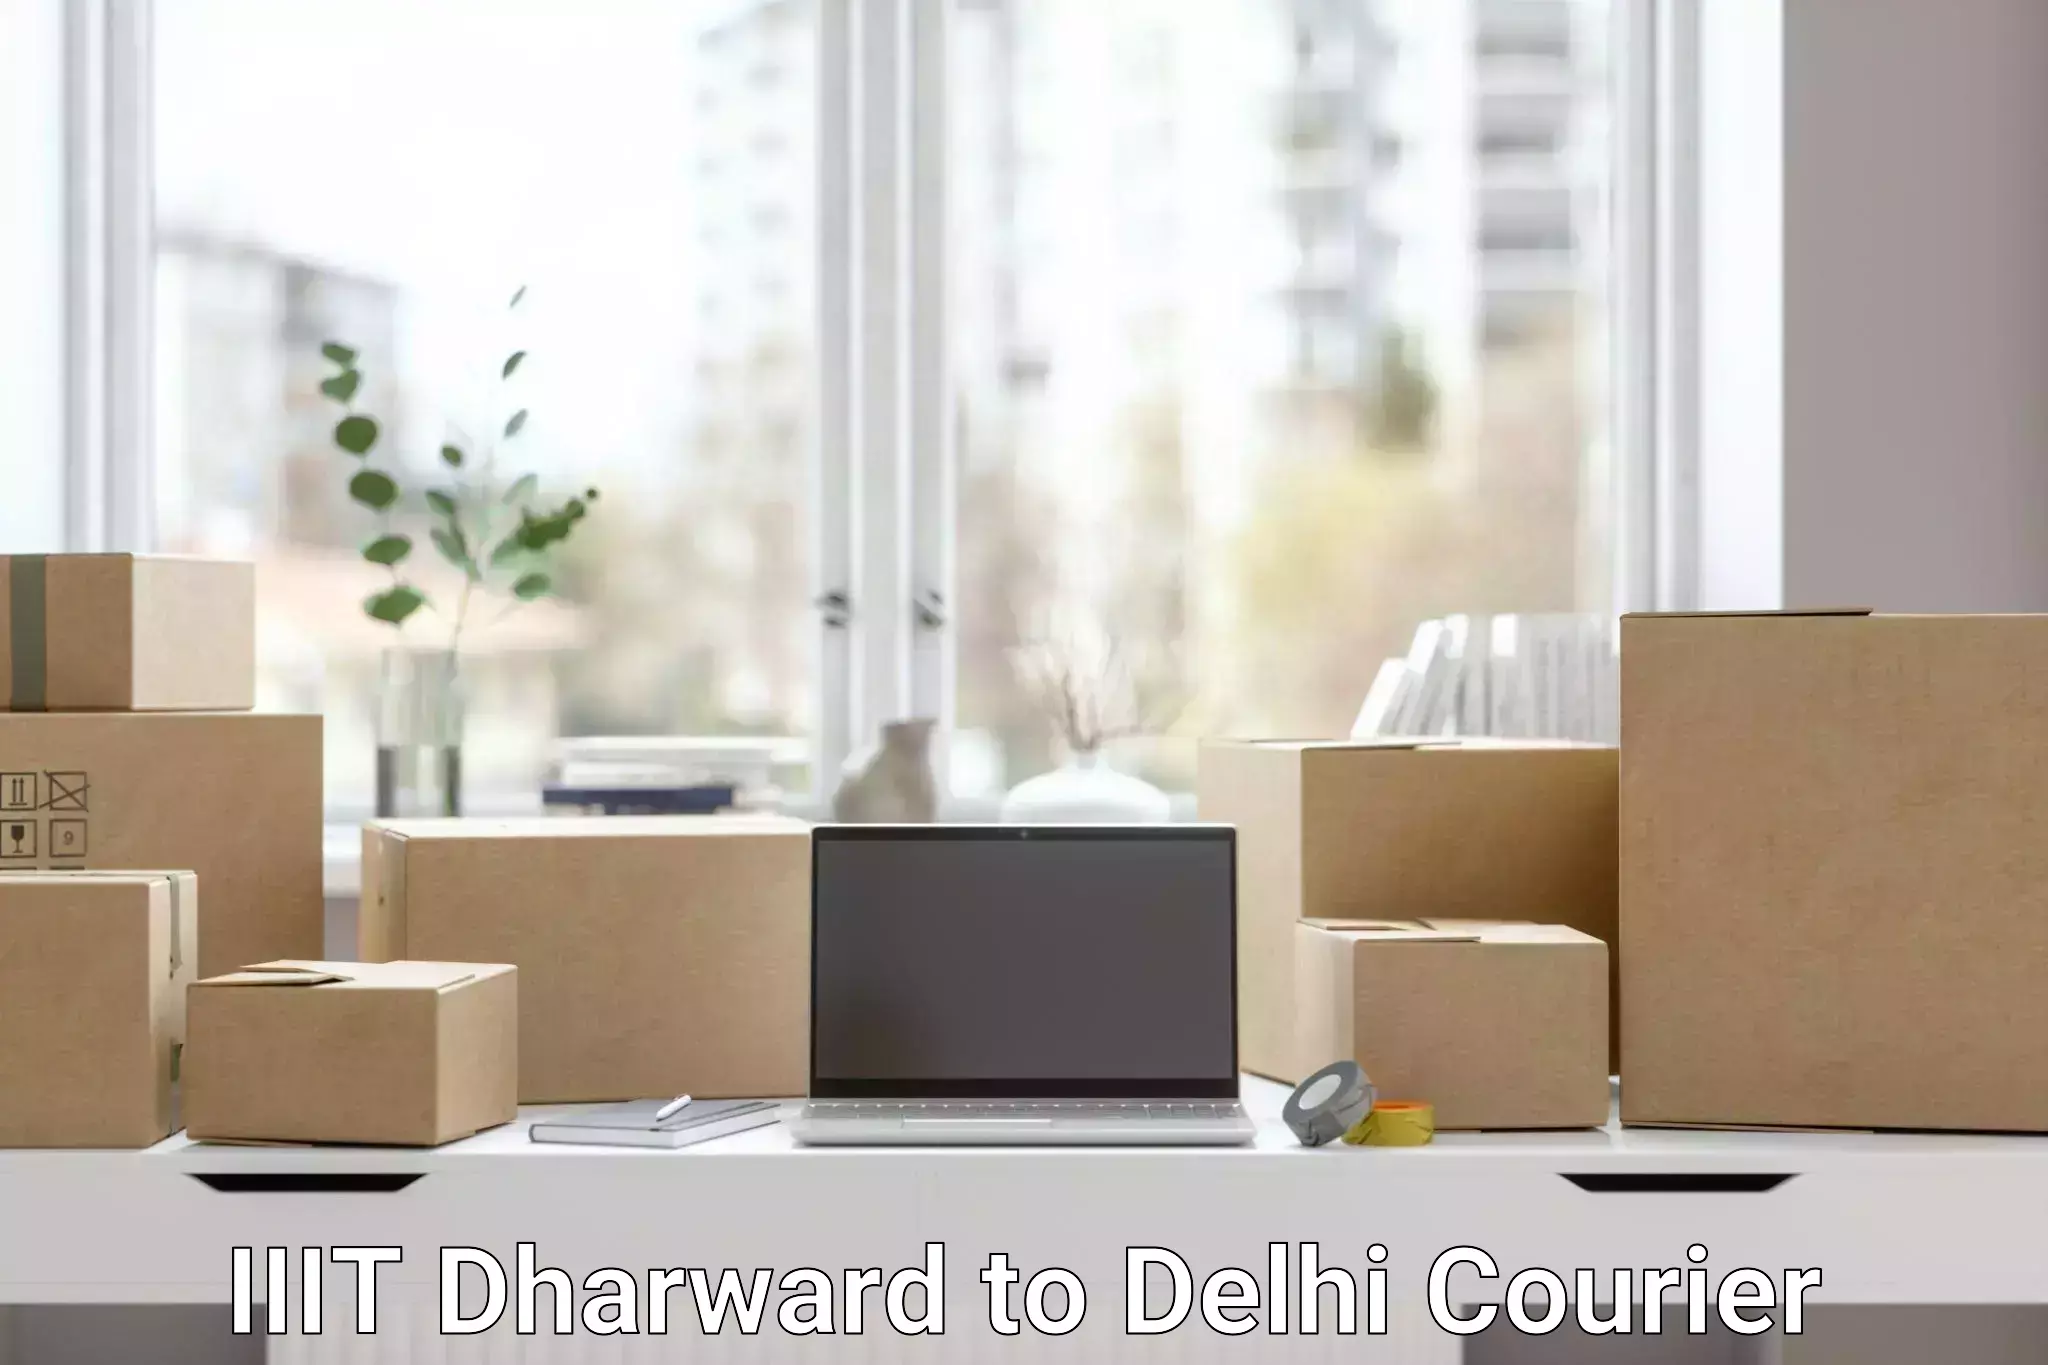 International logistics solutions IIIT Dharward to Jamia Millia Islamia New Delhi